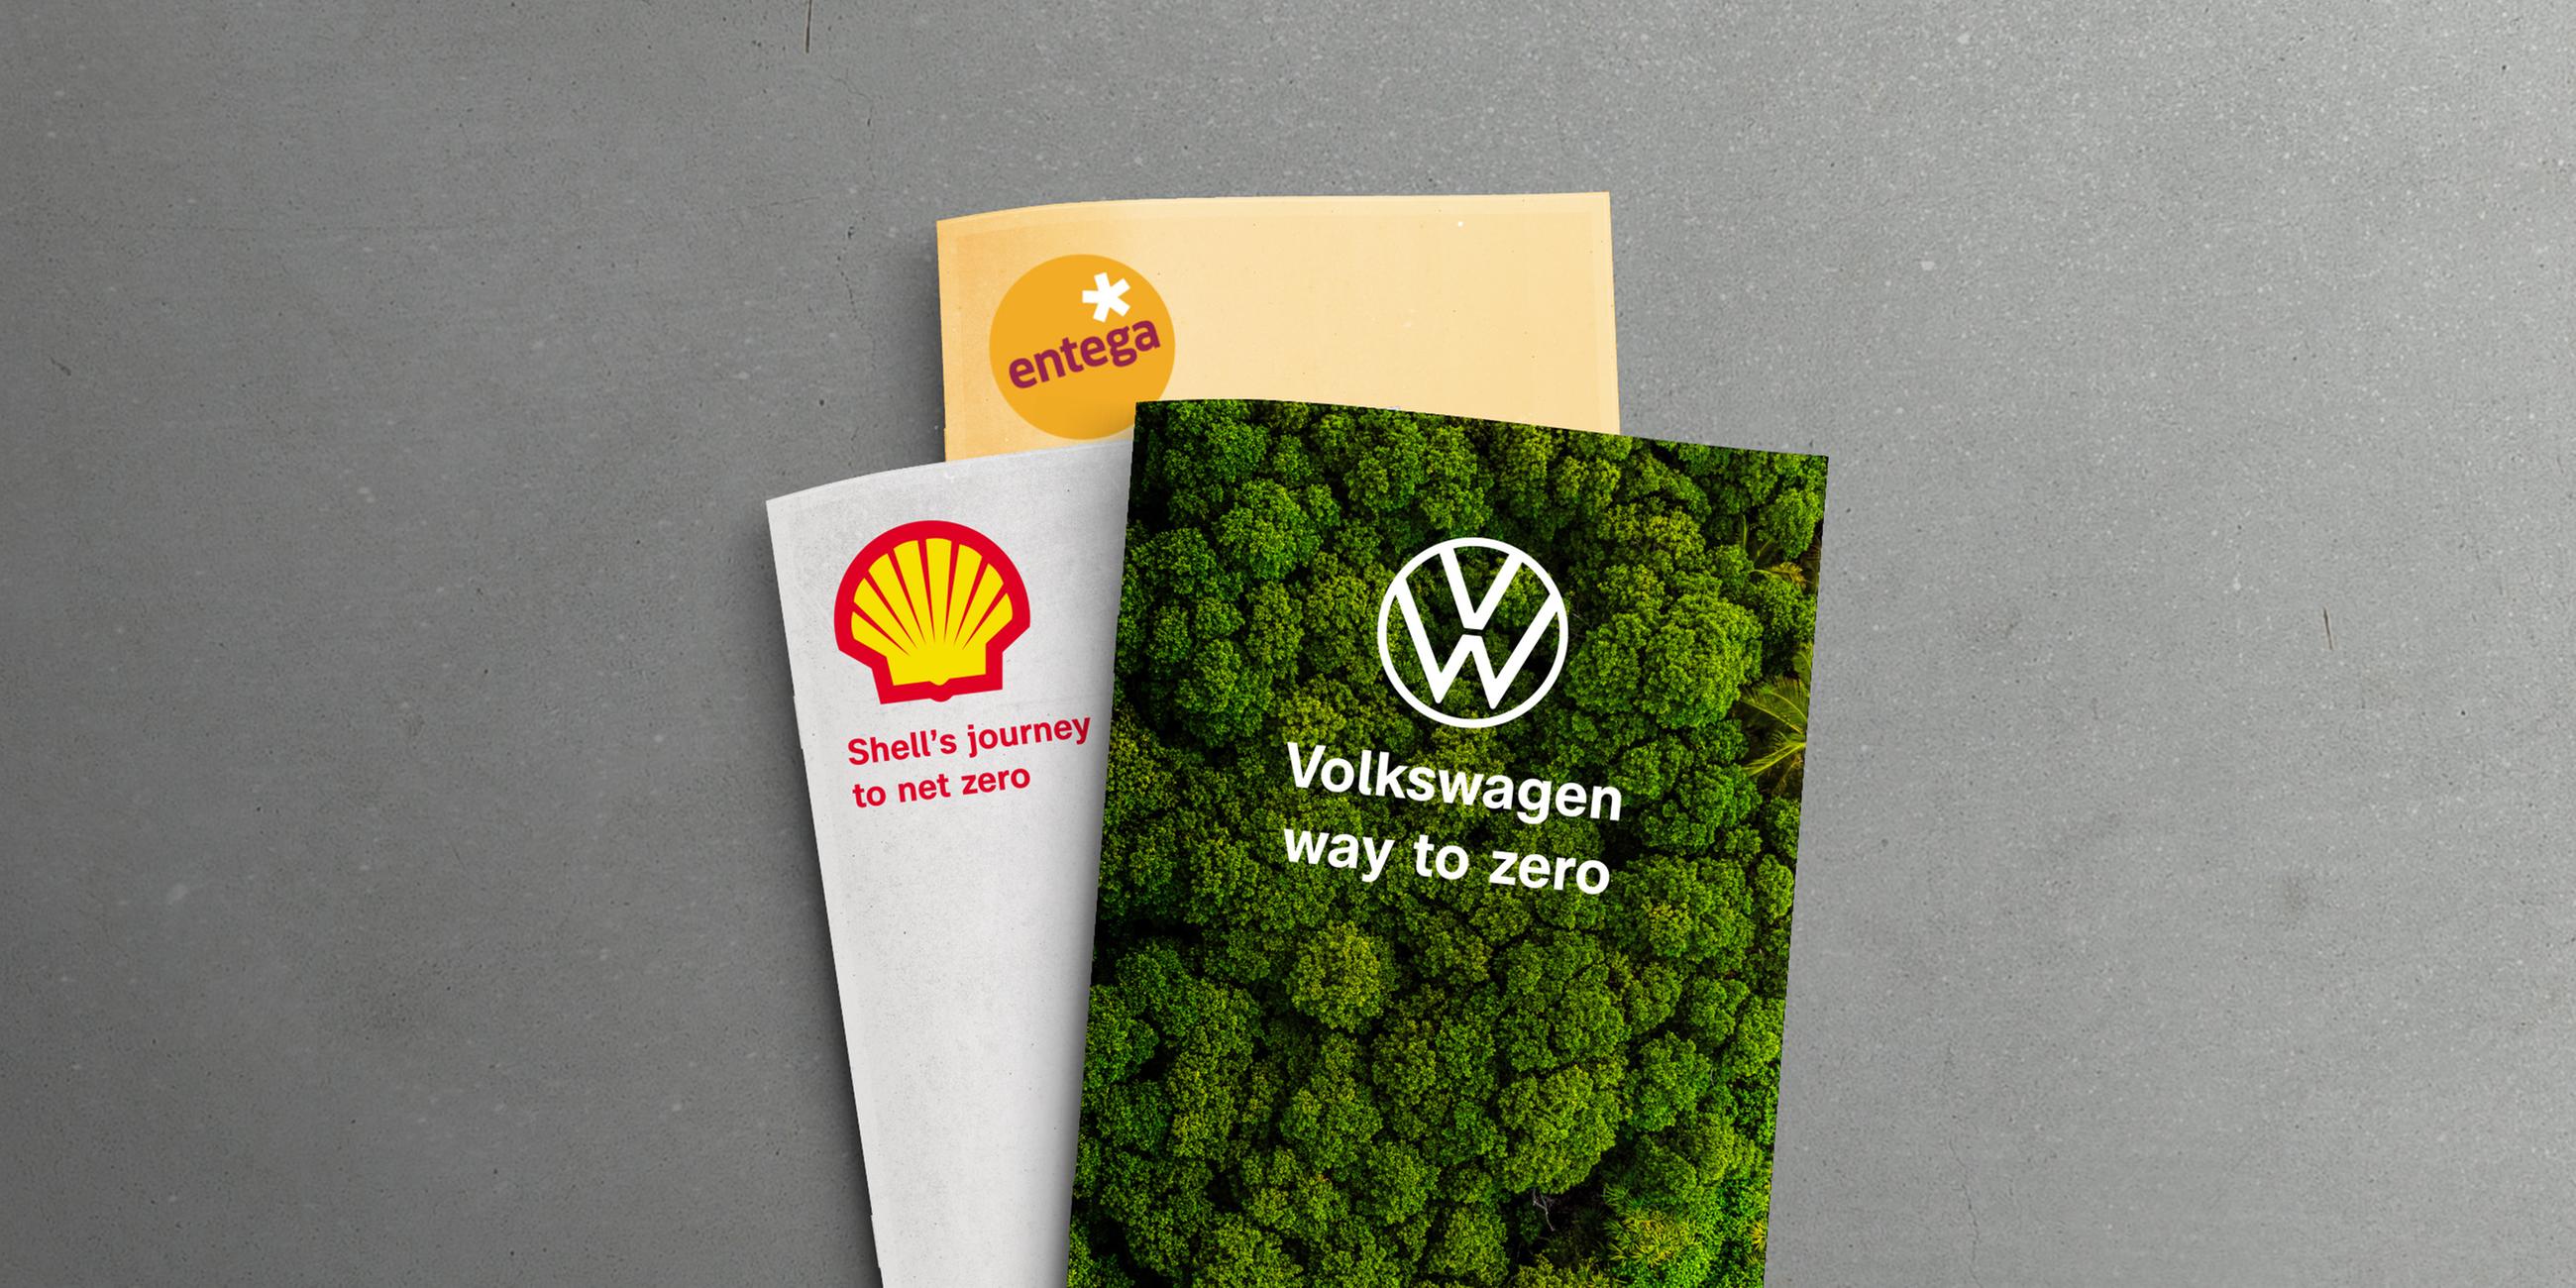 Das Vorschaubild zeigt je eine Akte der Konzerne entega, Shell und Volkswagen. Es geht um die Klimabemühungen der Konzerne - den Weg hin zu einer emissionsfreien Produktion.